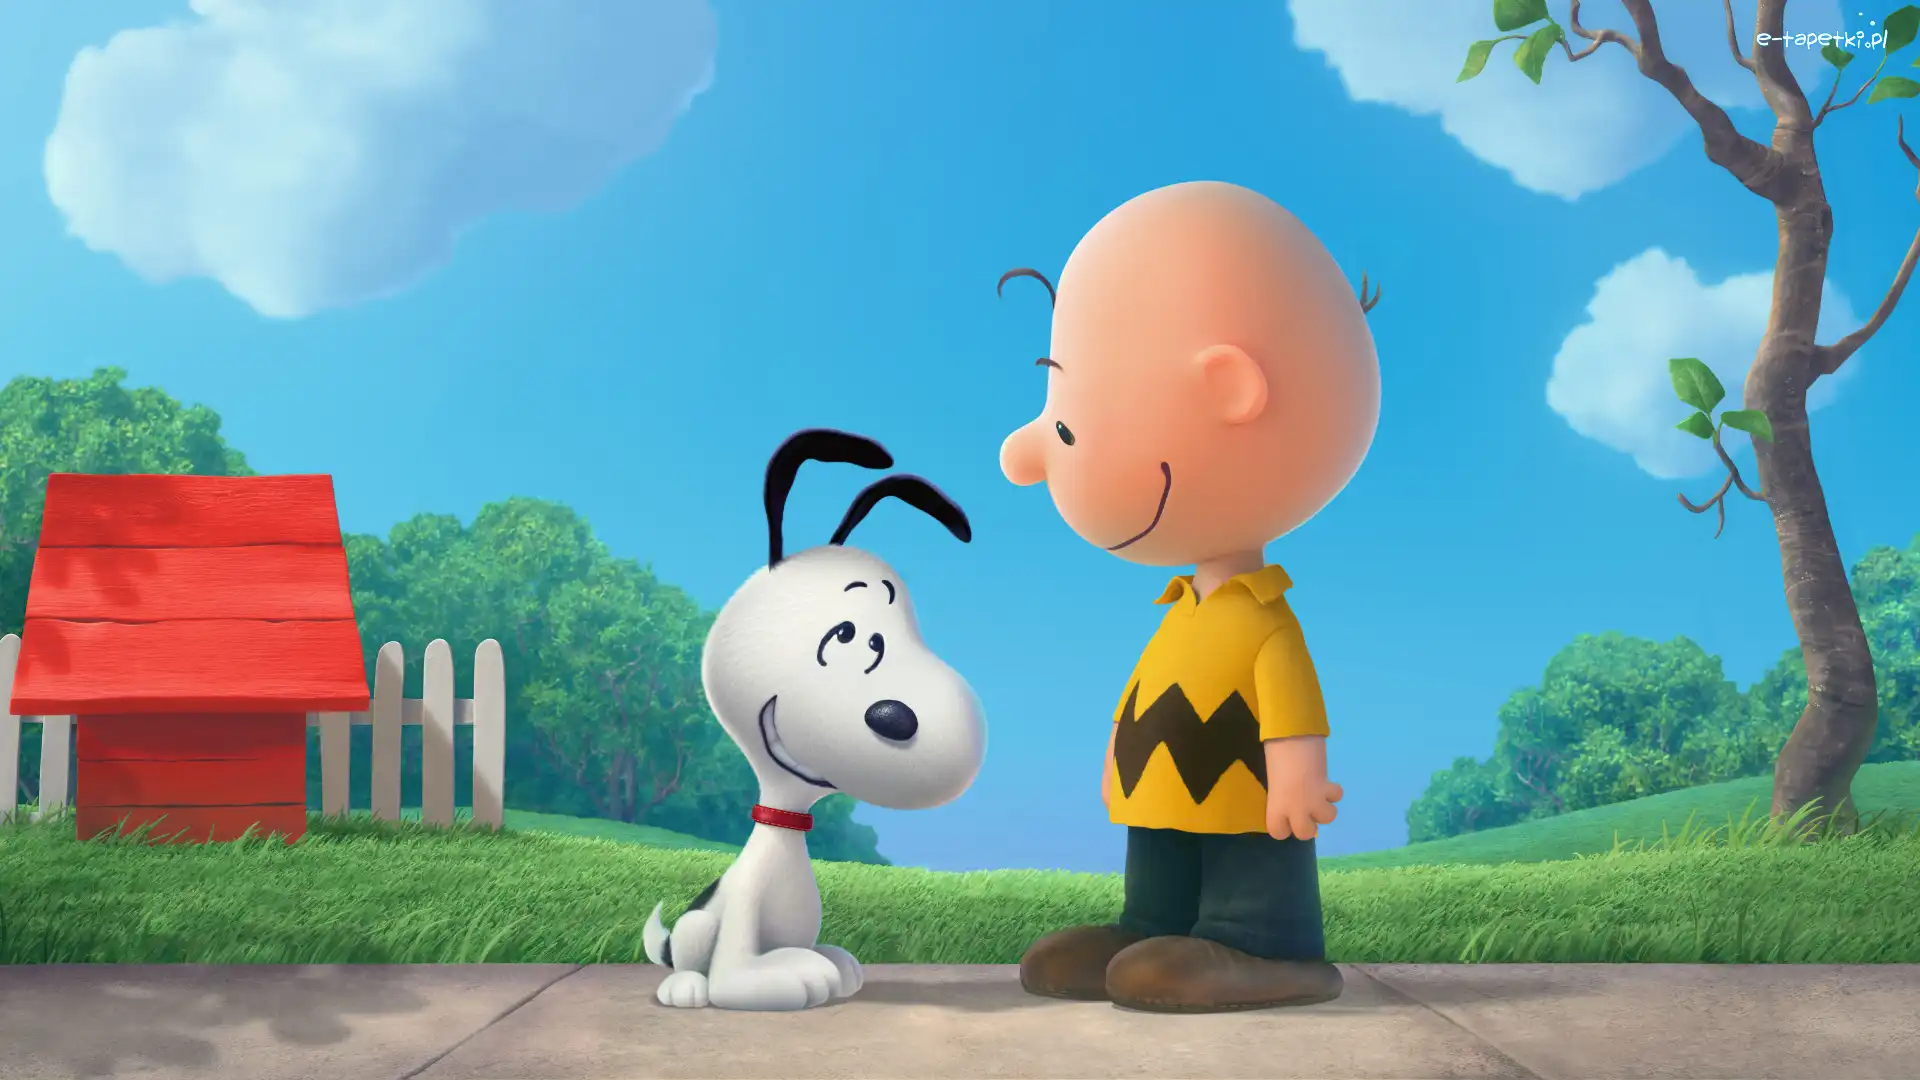 Chłopiec, Pies, Snoopy, Charlie Brown, Fistaszki, Film animowany